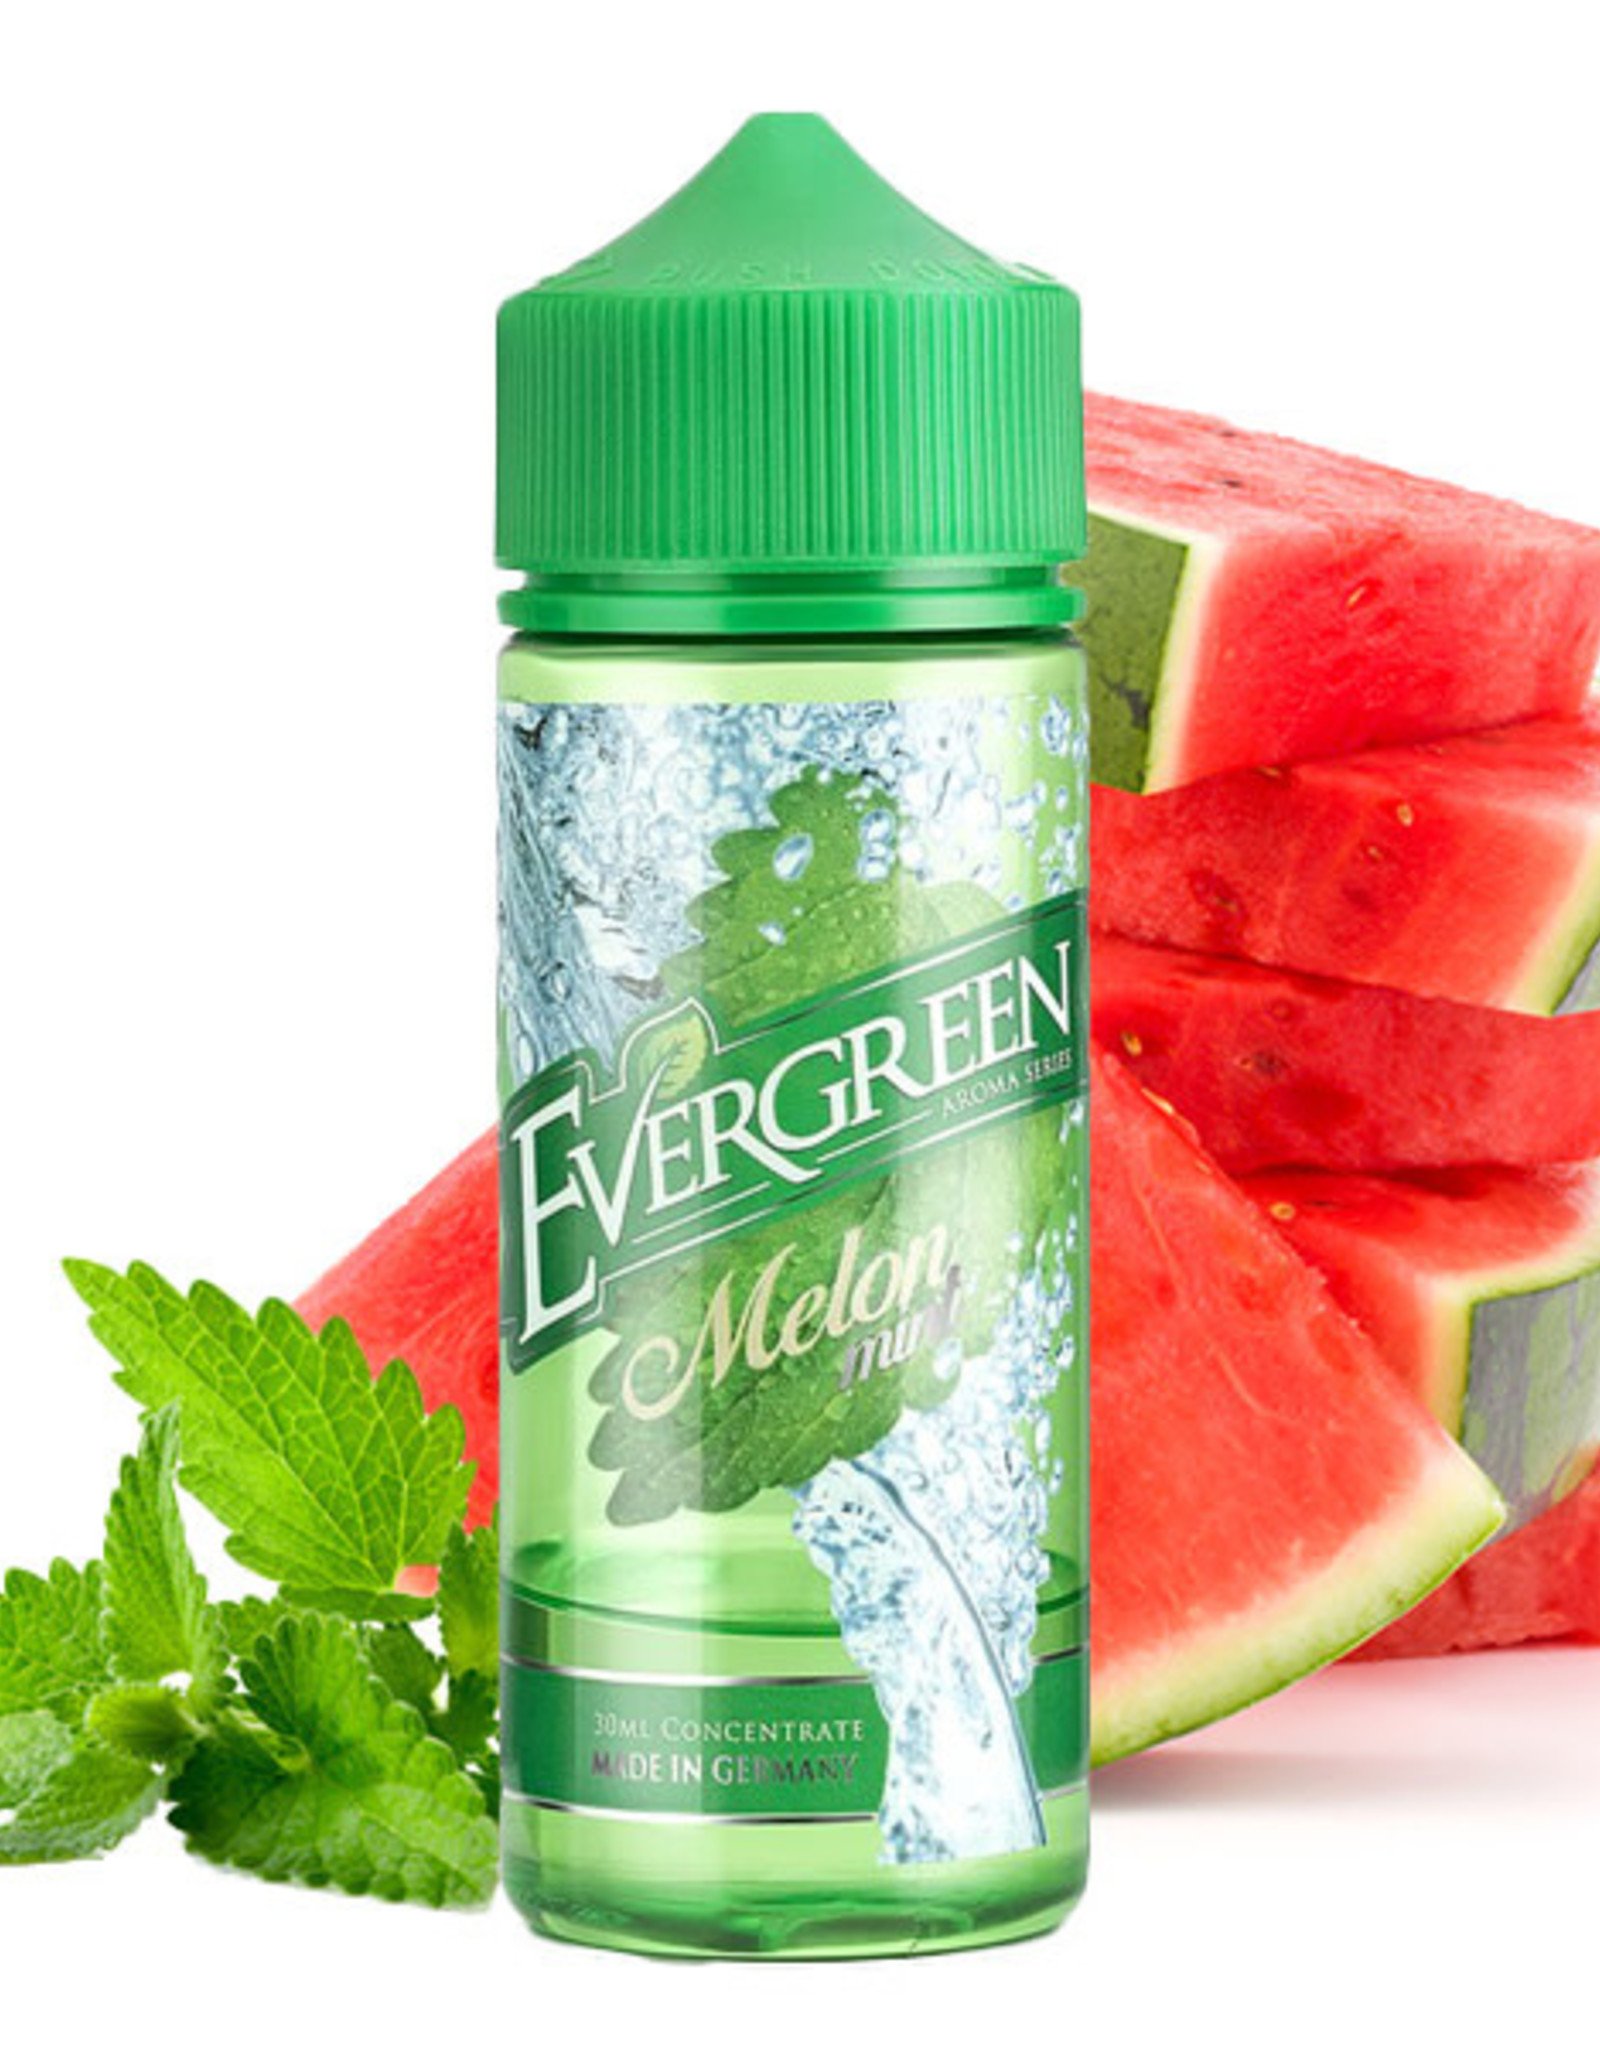 Ever Green EverGreen - Melon Mint 30ml